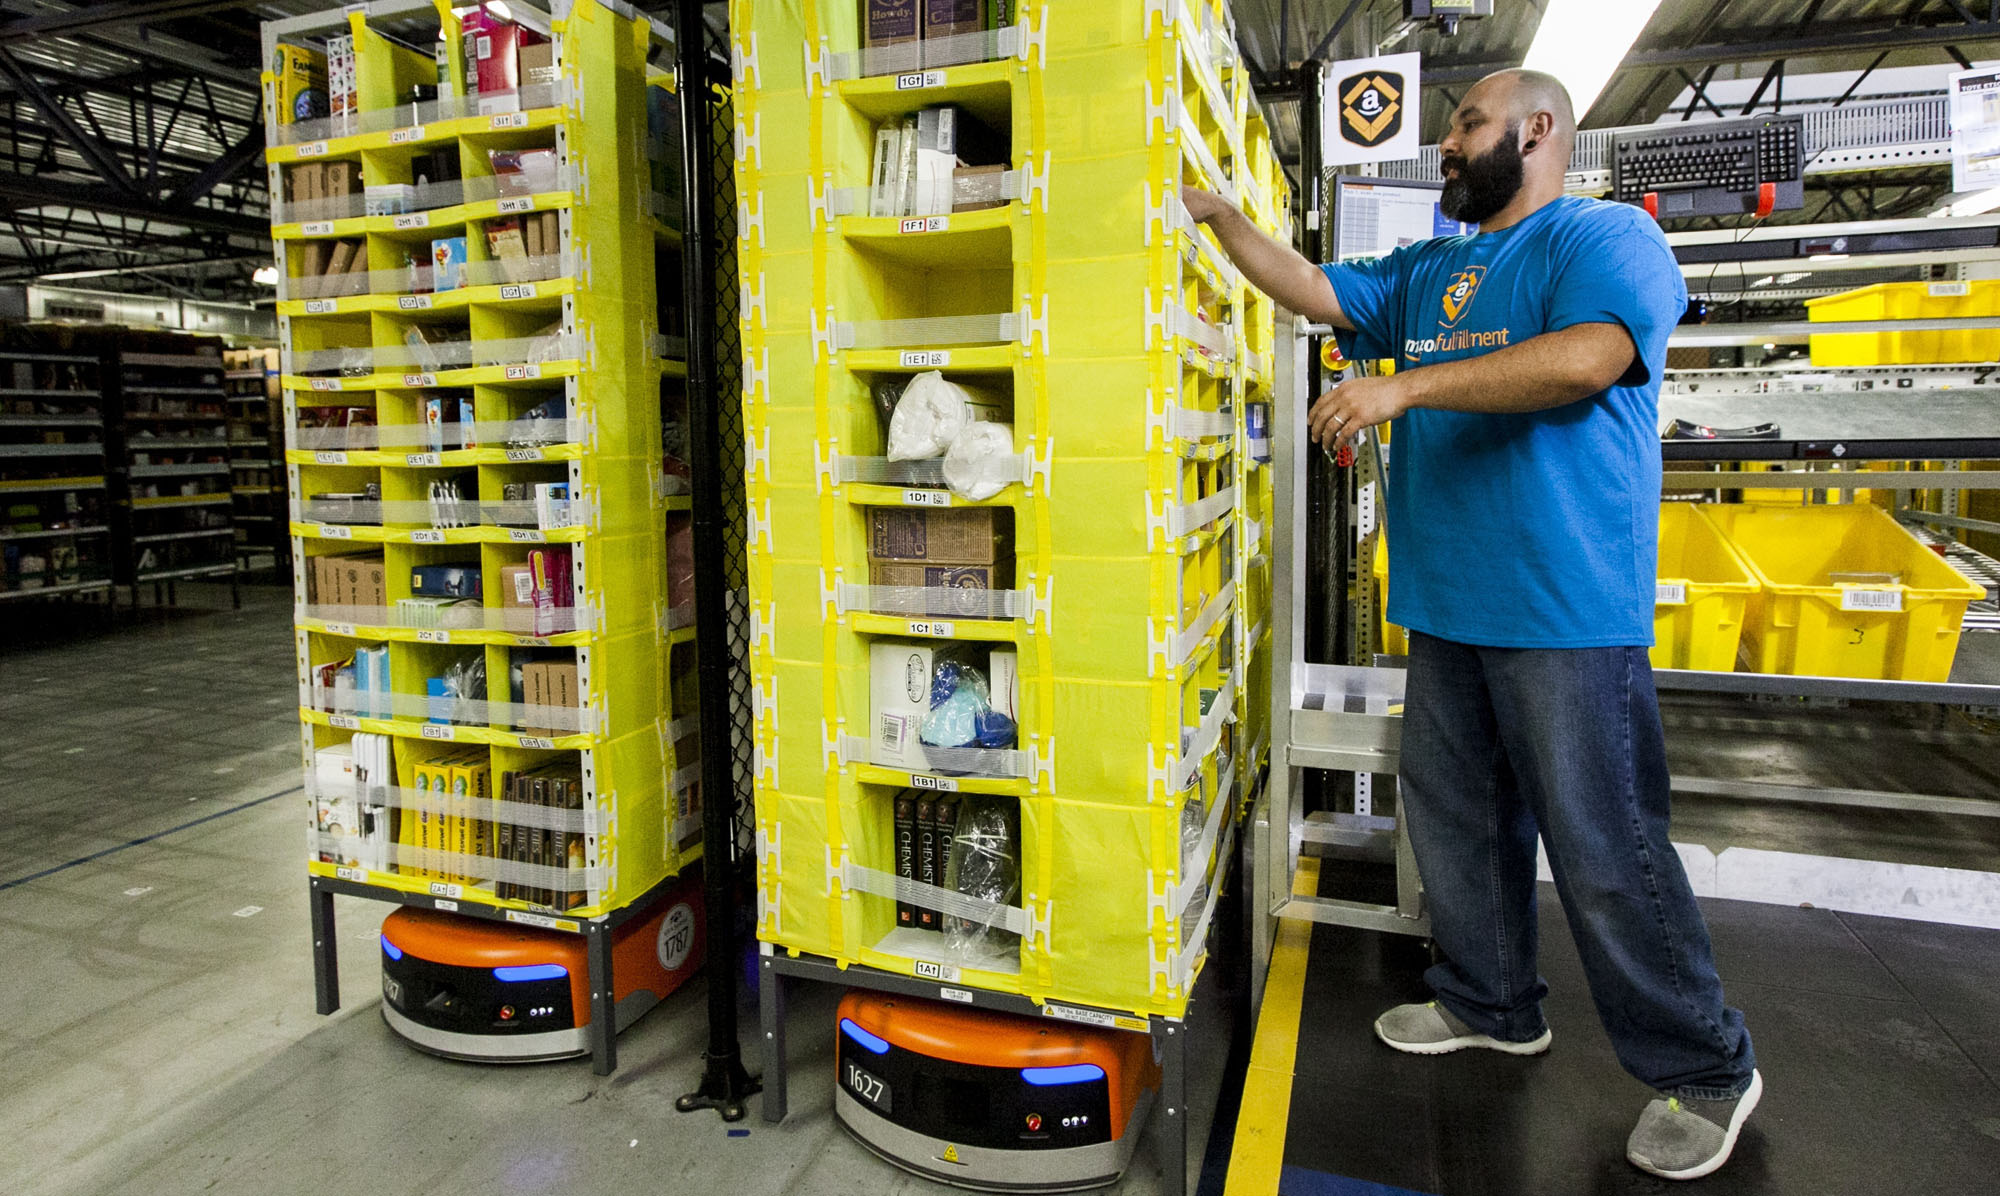 Amazon ryktas jobba på ny leveranslösning